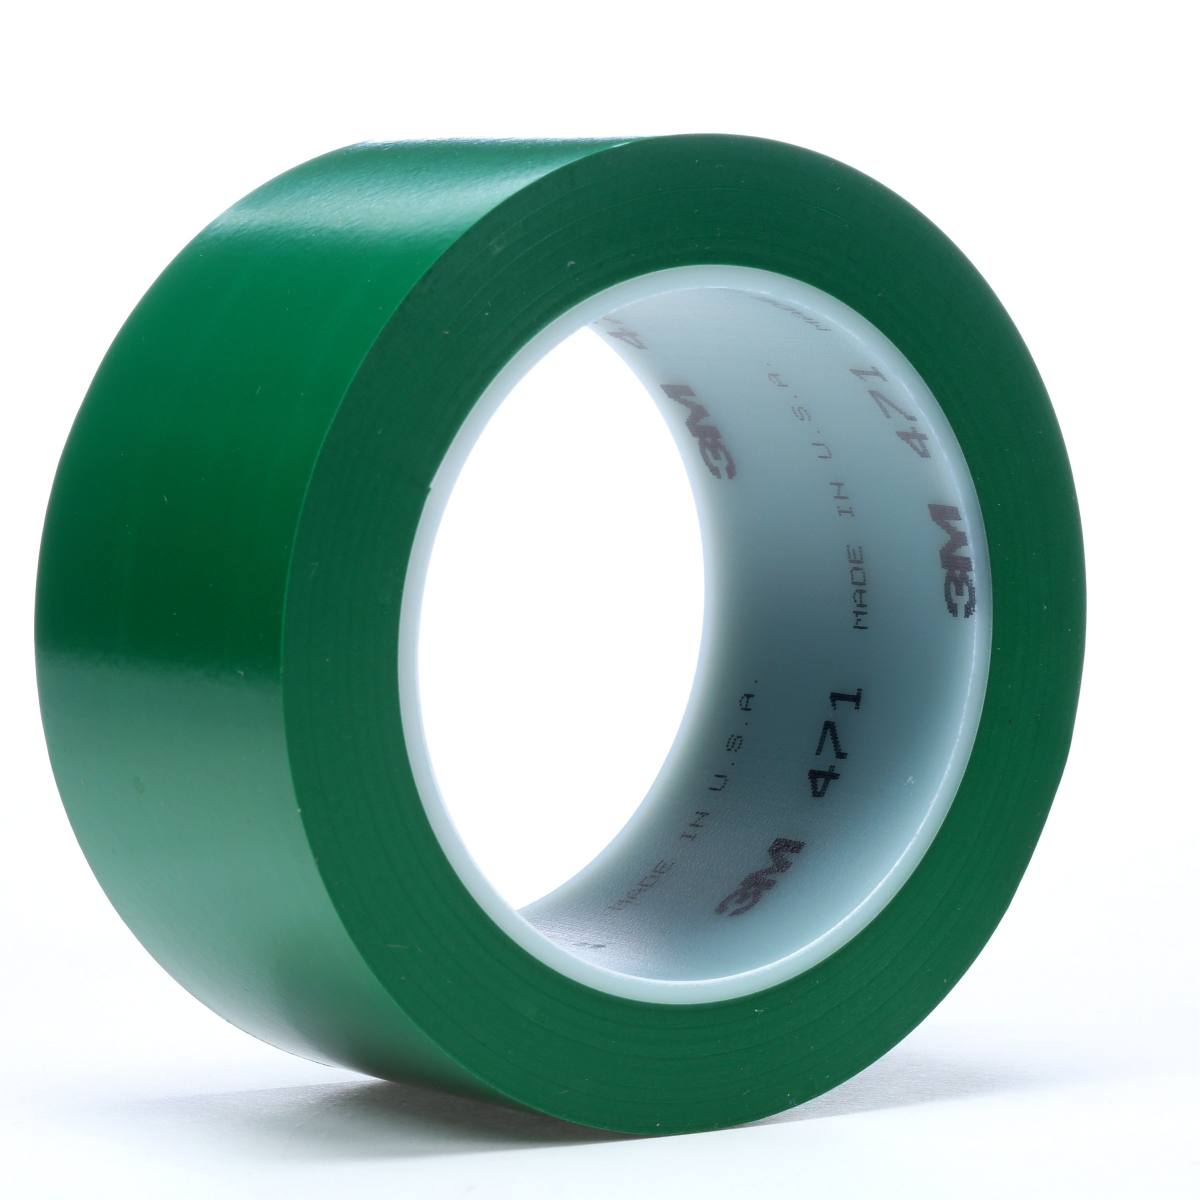 Nastro adesivo 3M in PVC morbido 471 F, verde, 6 mm x 33 m, 0,13 mm